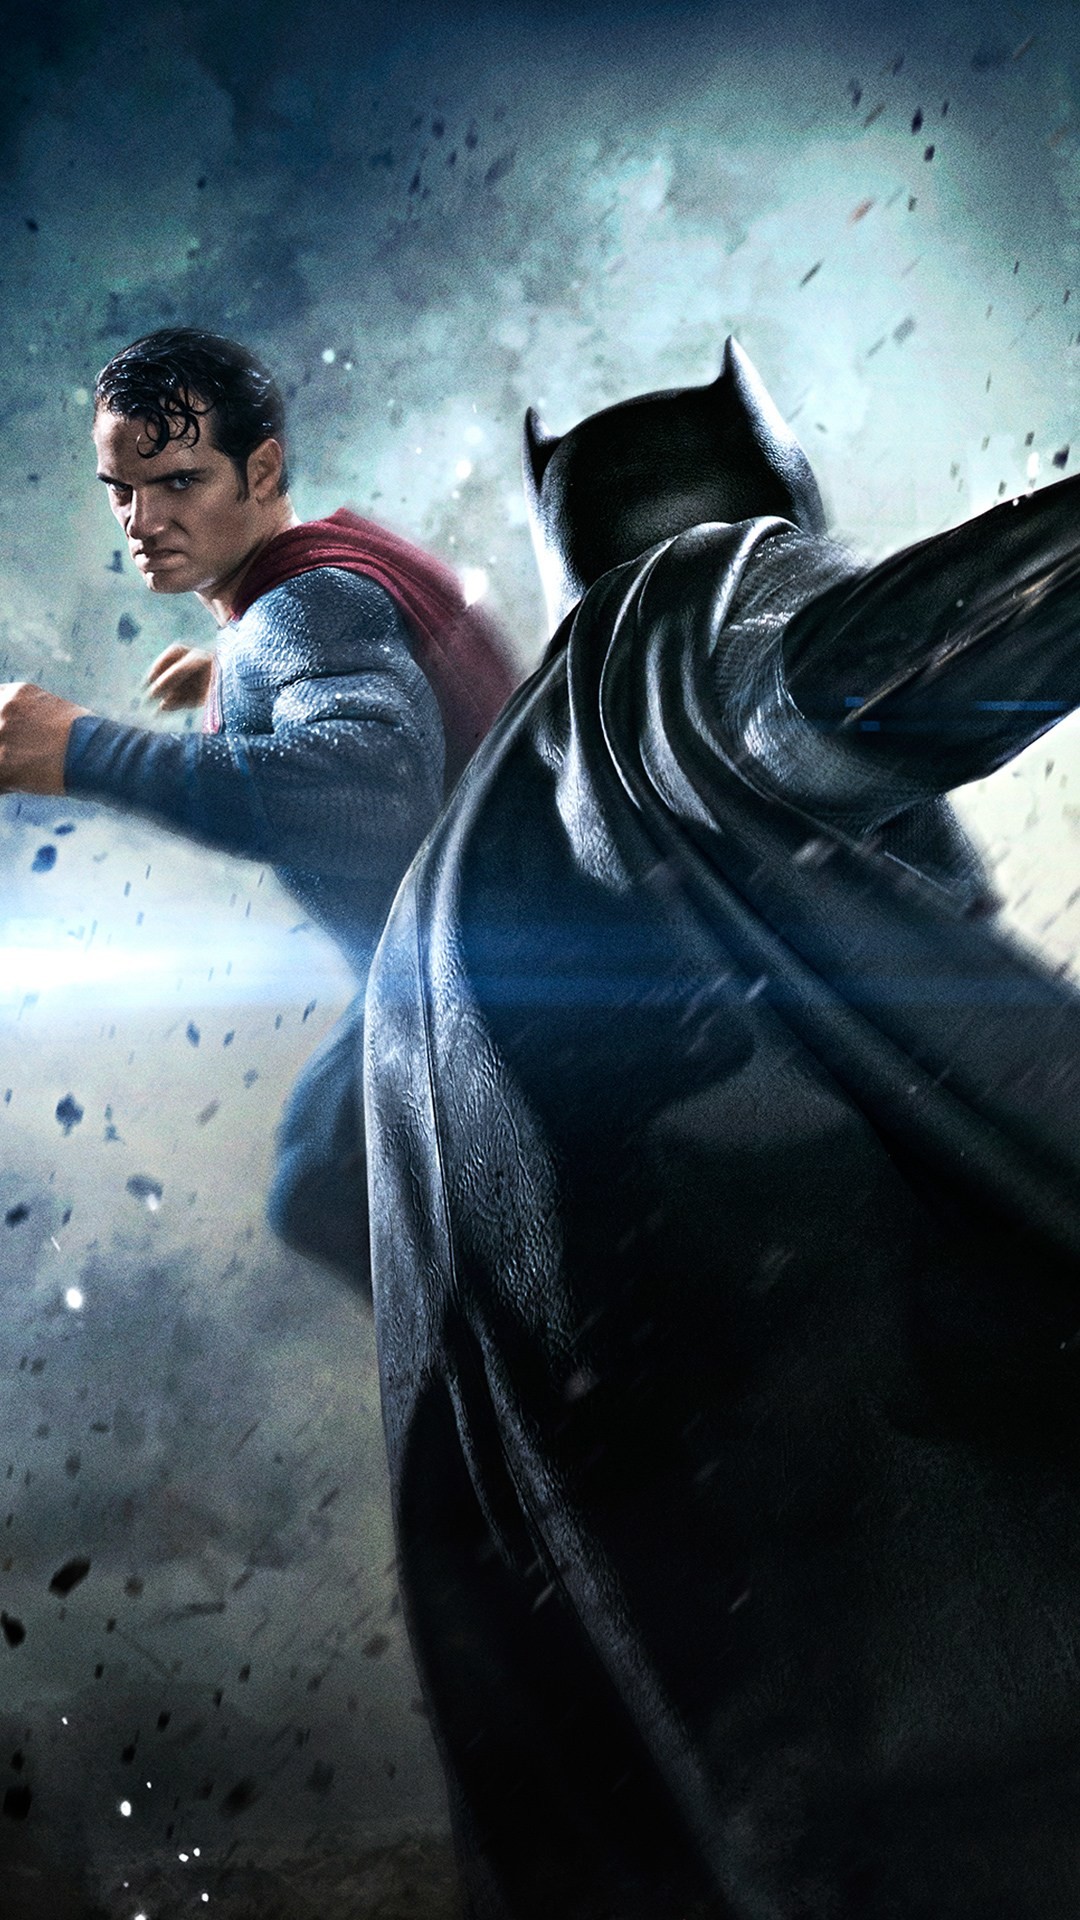 1080x1920 batman-vs-superman-movie-fight-iphone-6-plus-hd-wallpaper